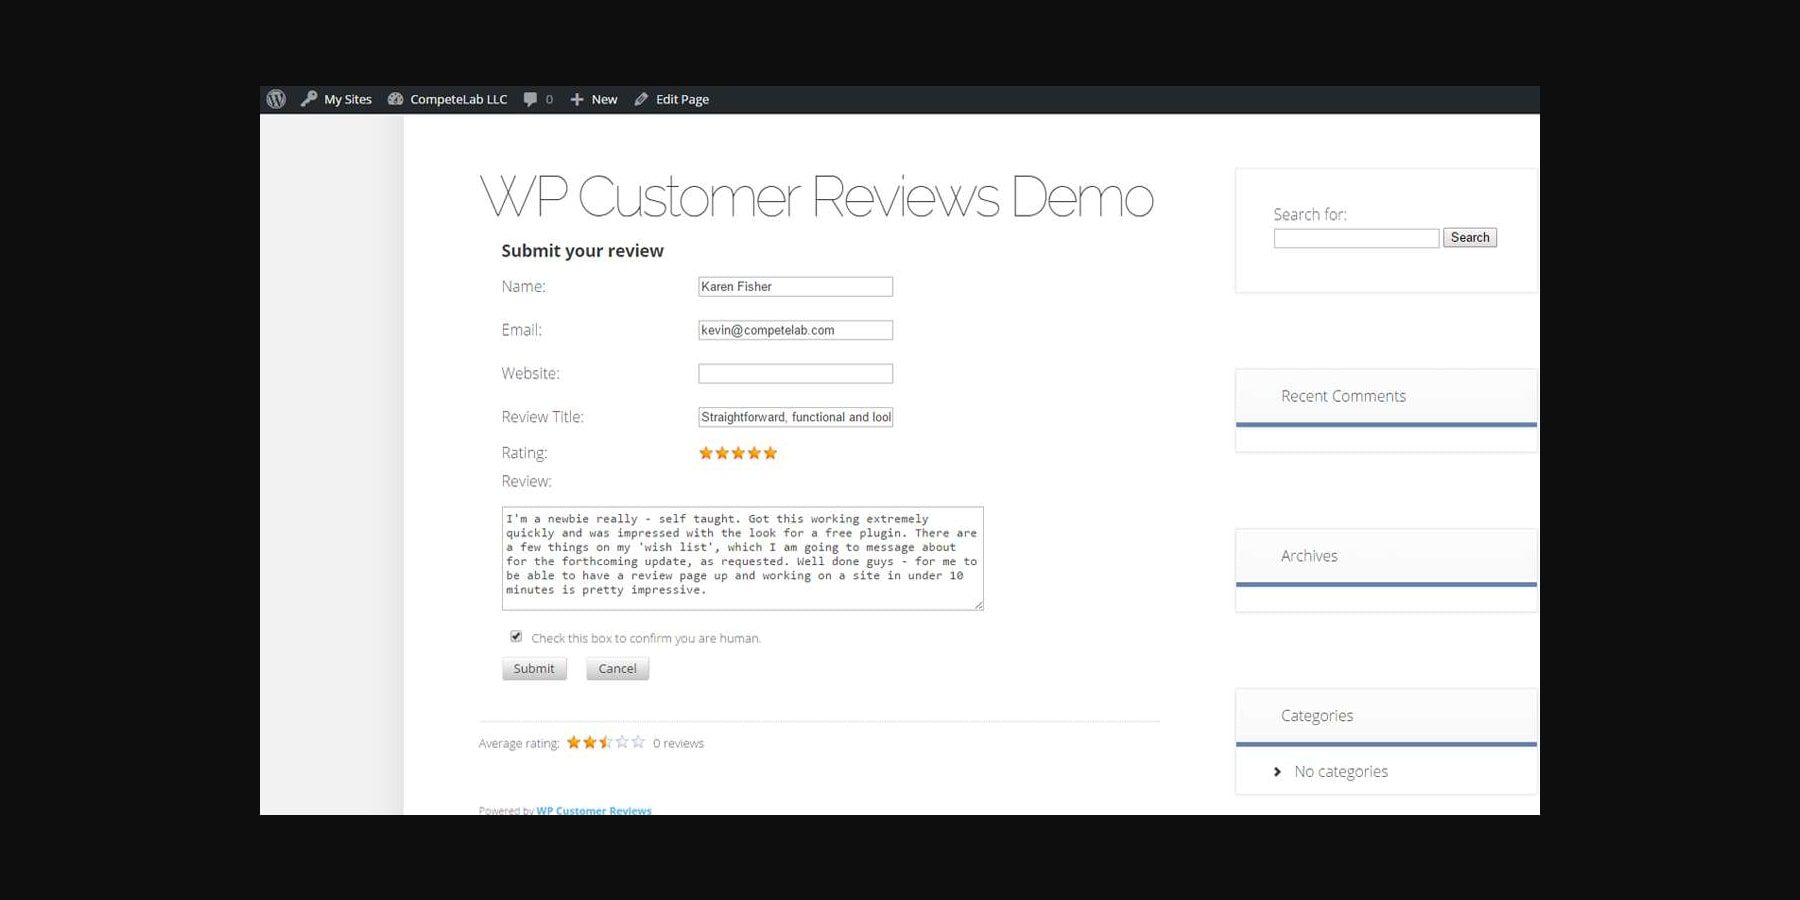 wp customer reviews